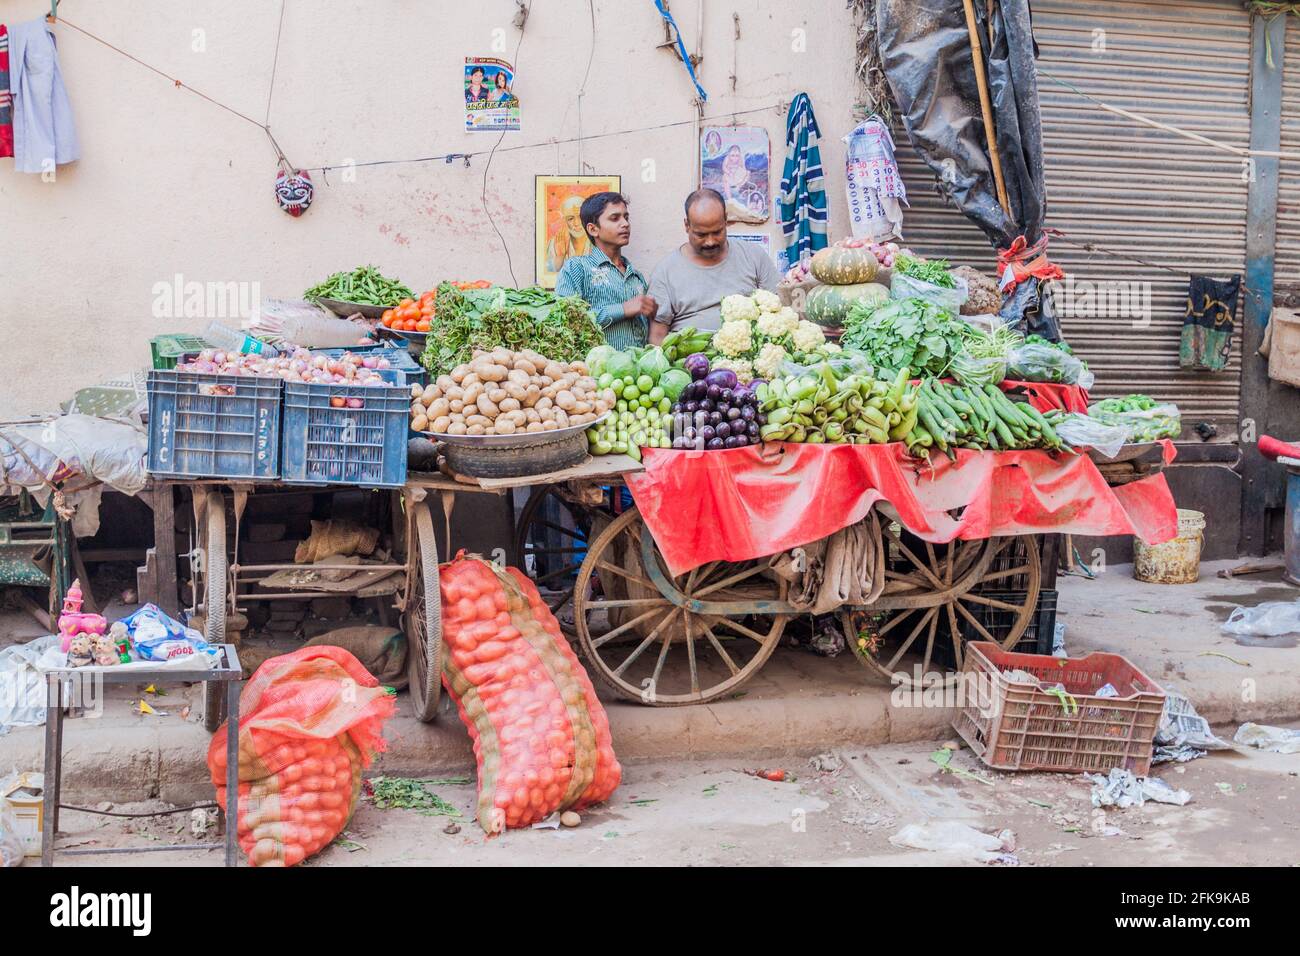 DELHI, INDE - 22 OCTOBRE 2016 : un bac à légumes dans le centre de Delhi, Inde Banque D'Images